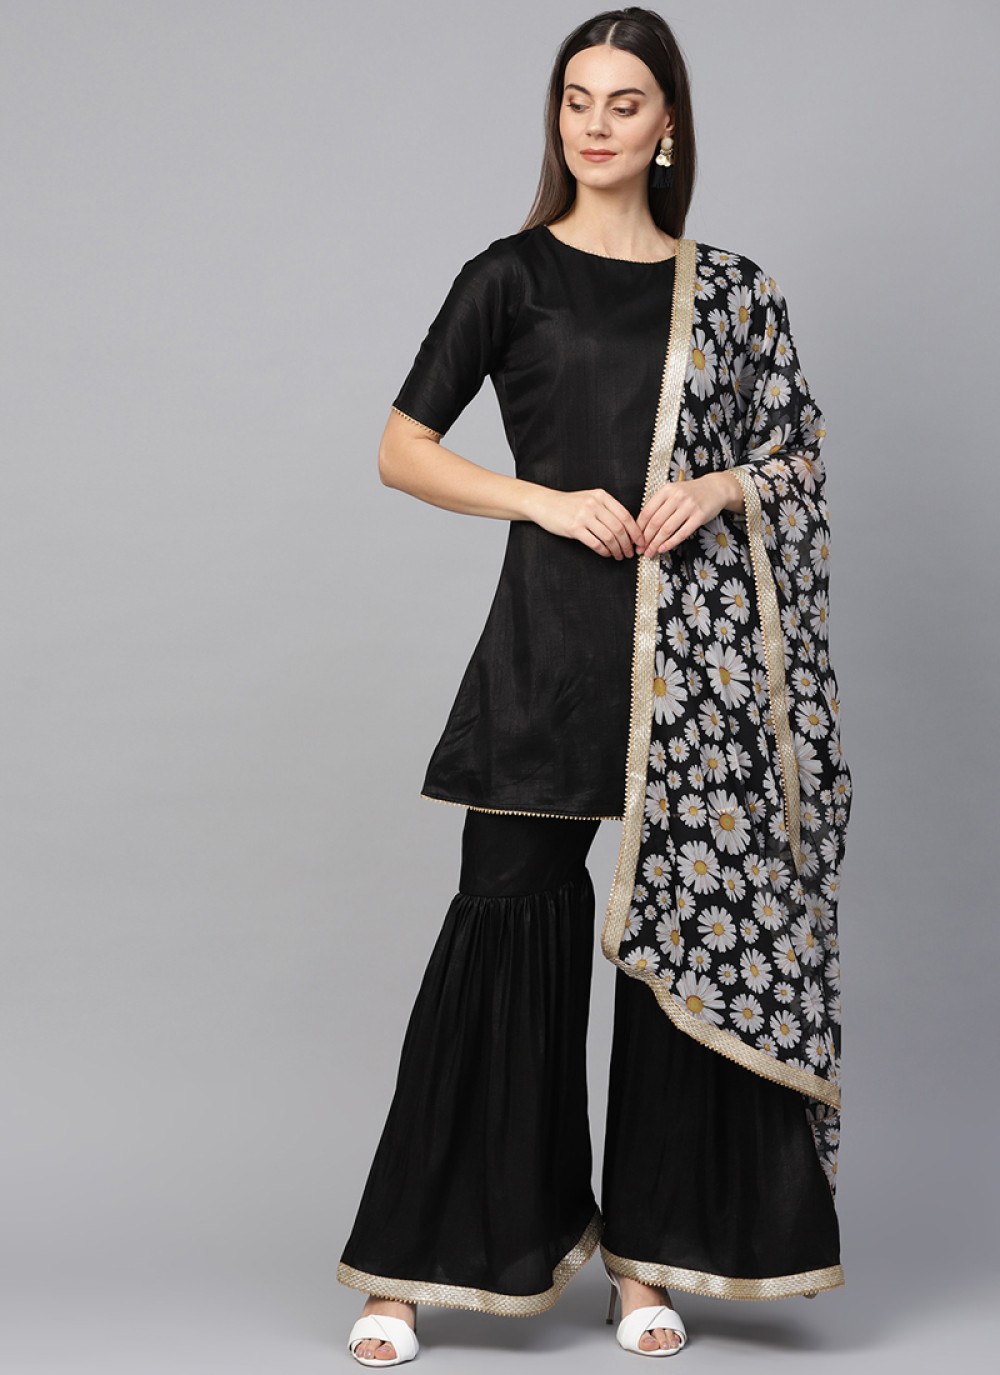 Black Cotton Anarkali – Jaipuriya